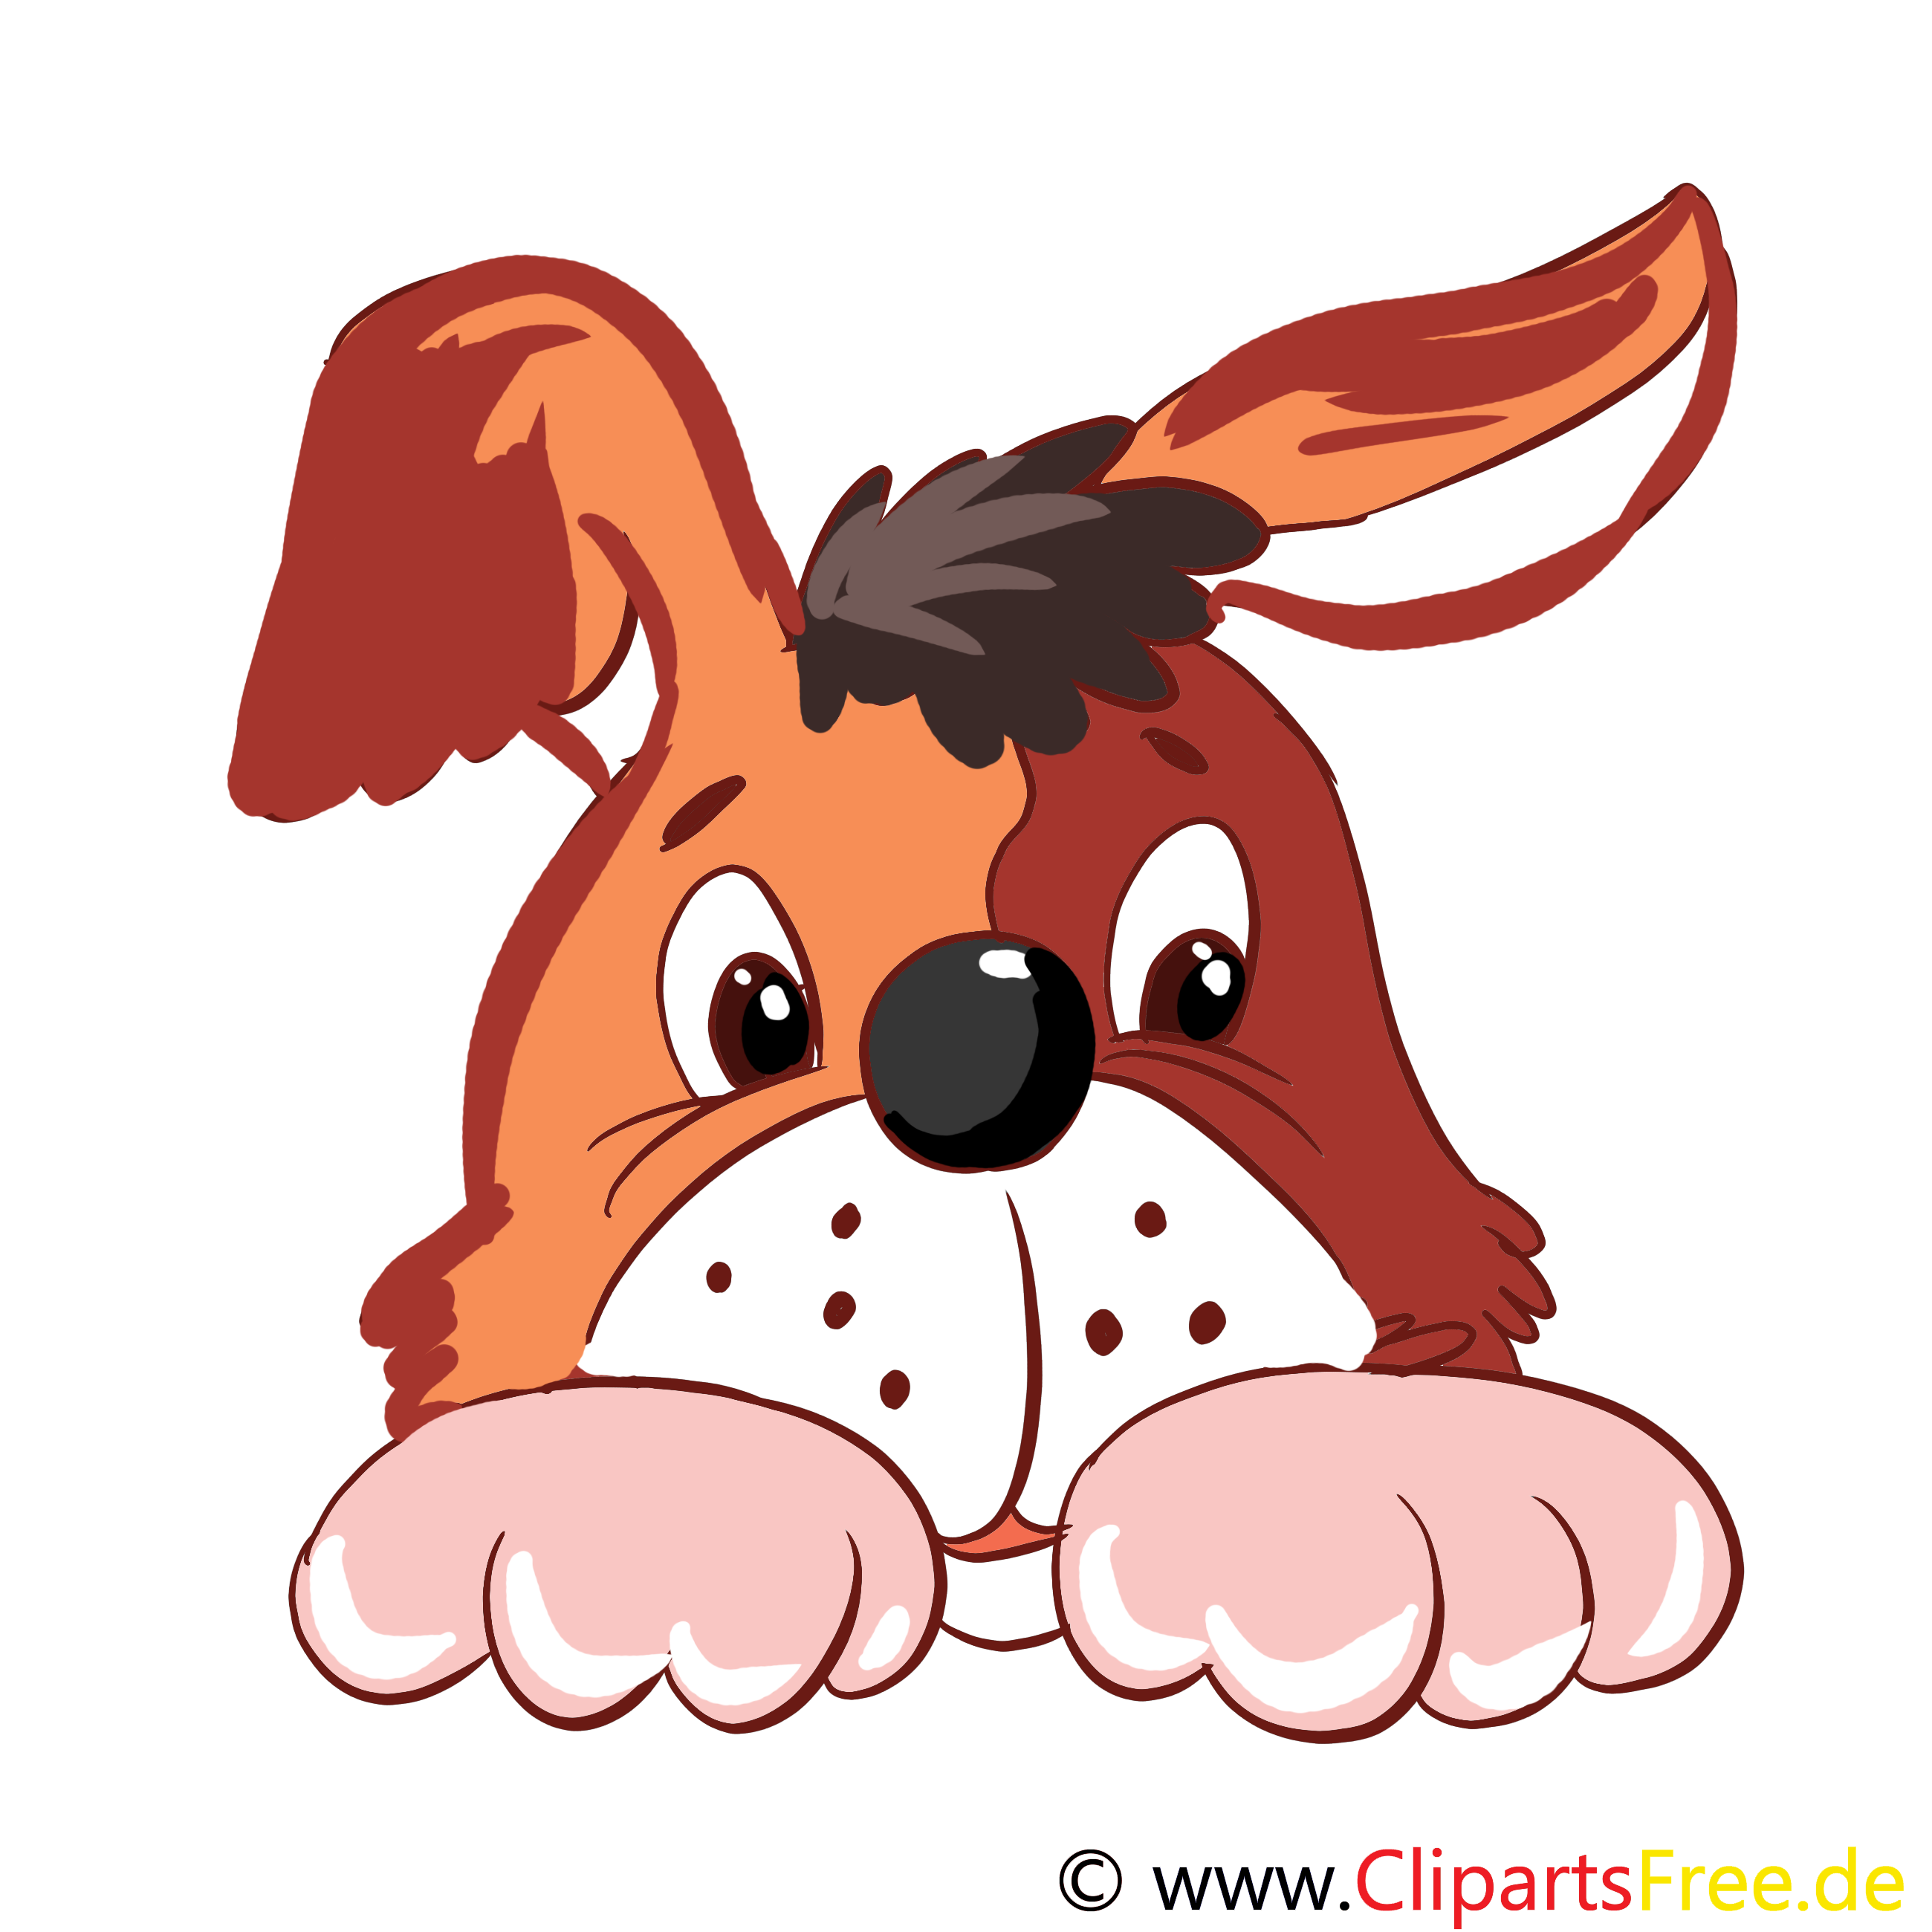 Ferme chien illustration à télécharger gratuite